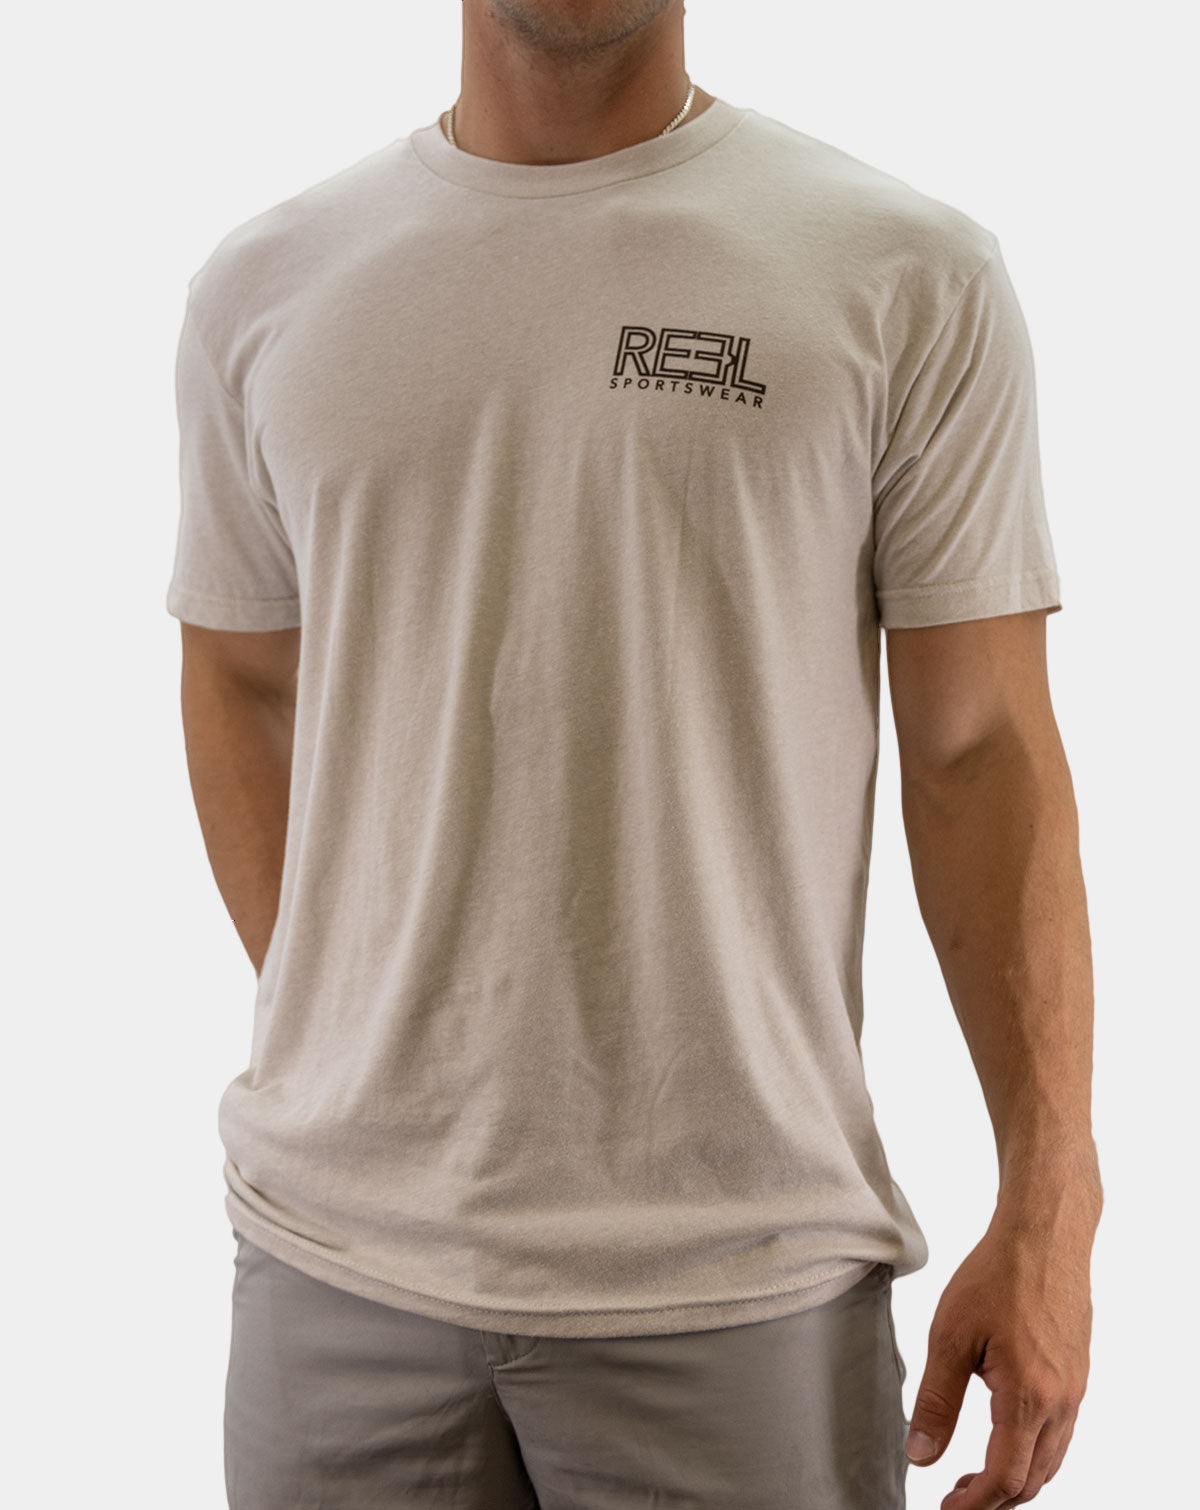 BushWhack- Reel Sportswear Premium Fishing T-shirt